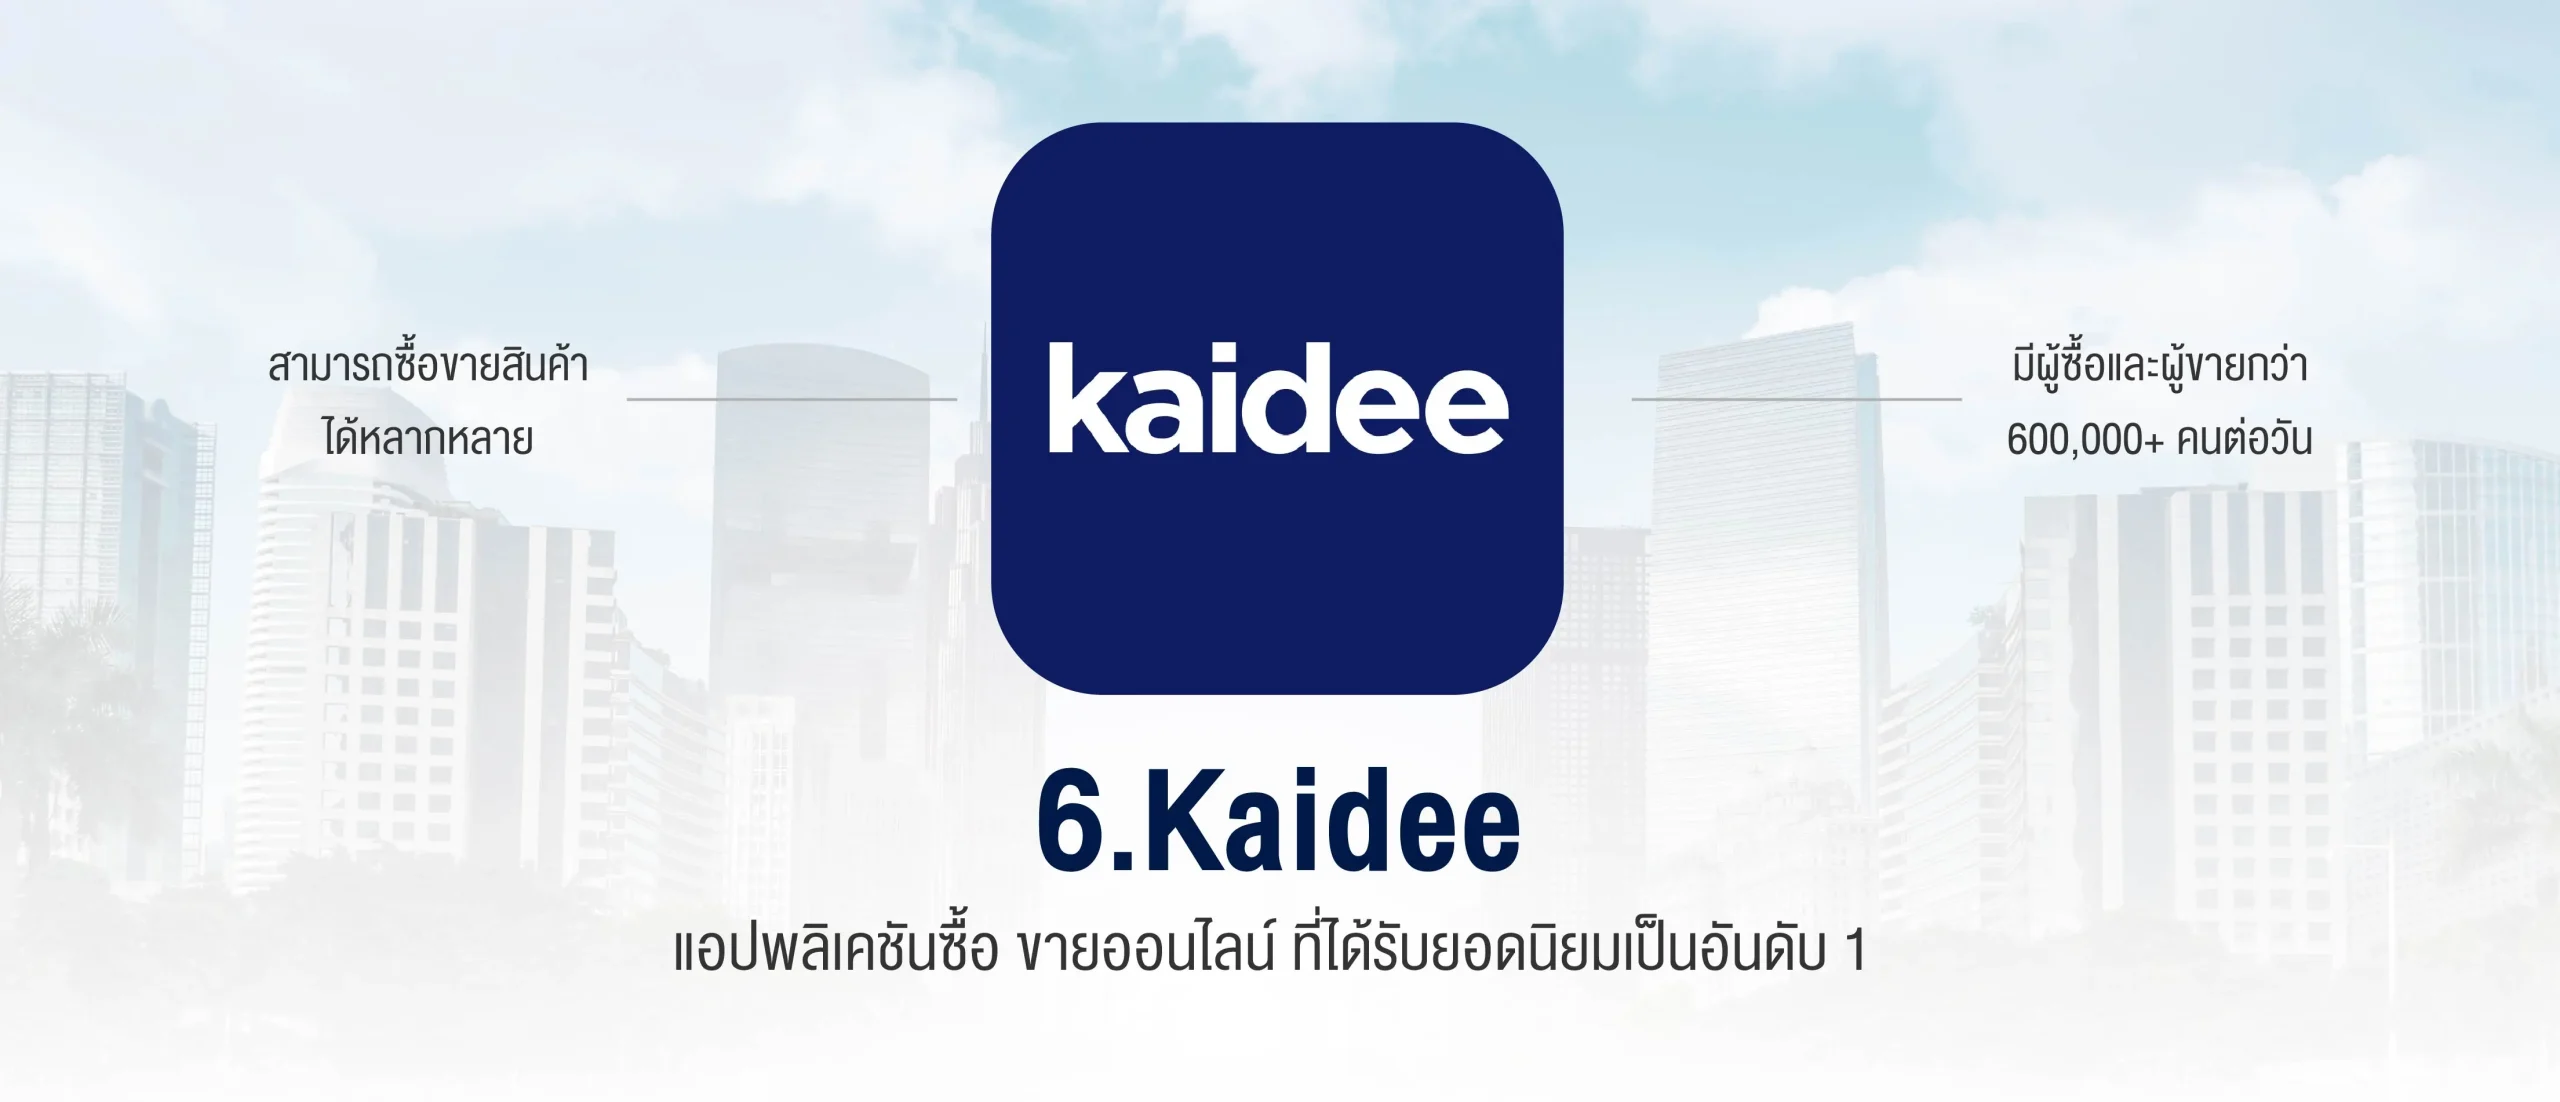 Kaidee แอปพลิเคชัน ซื้อ ขาย ช้อปปิ้งออนไลน์ ที่ได้รับยอดนิยมเป็นอันดับ 1